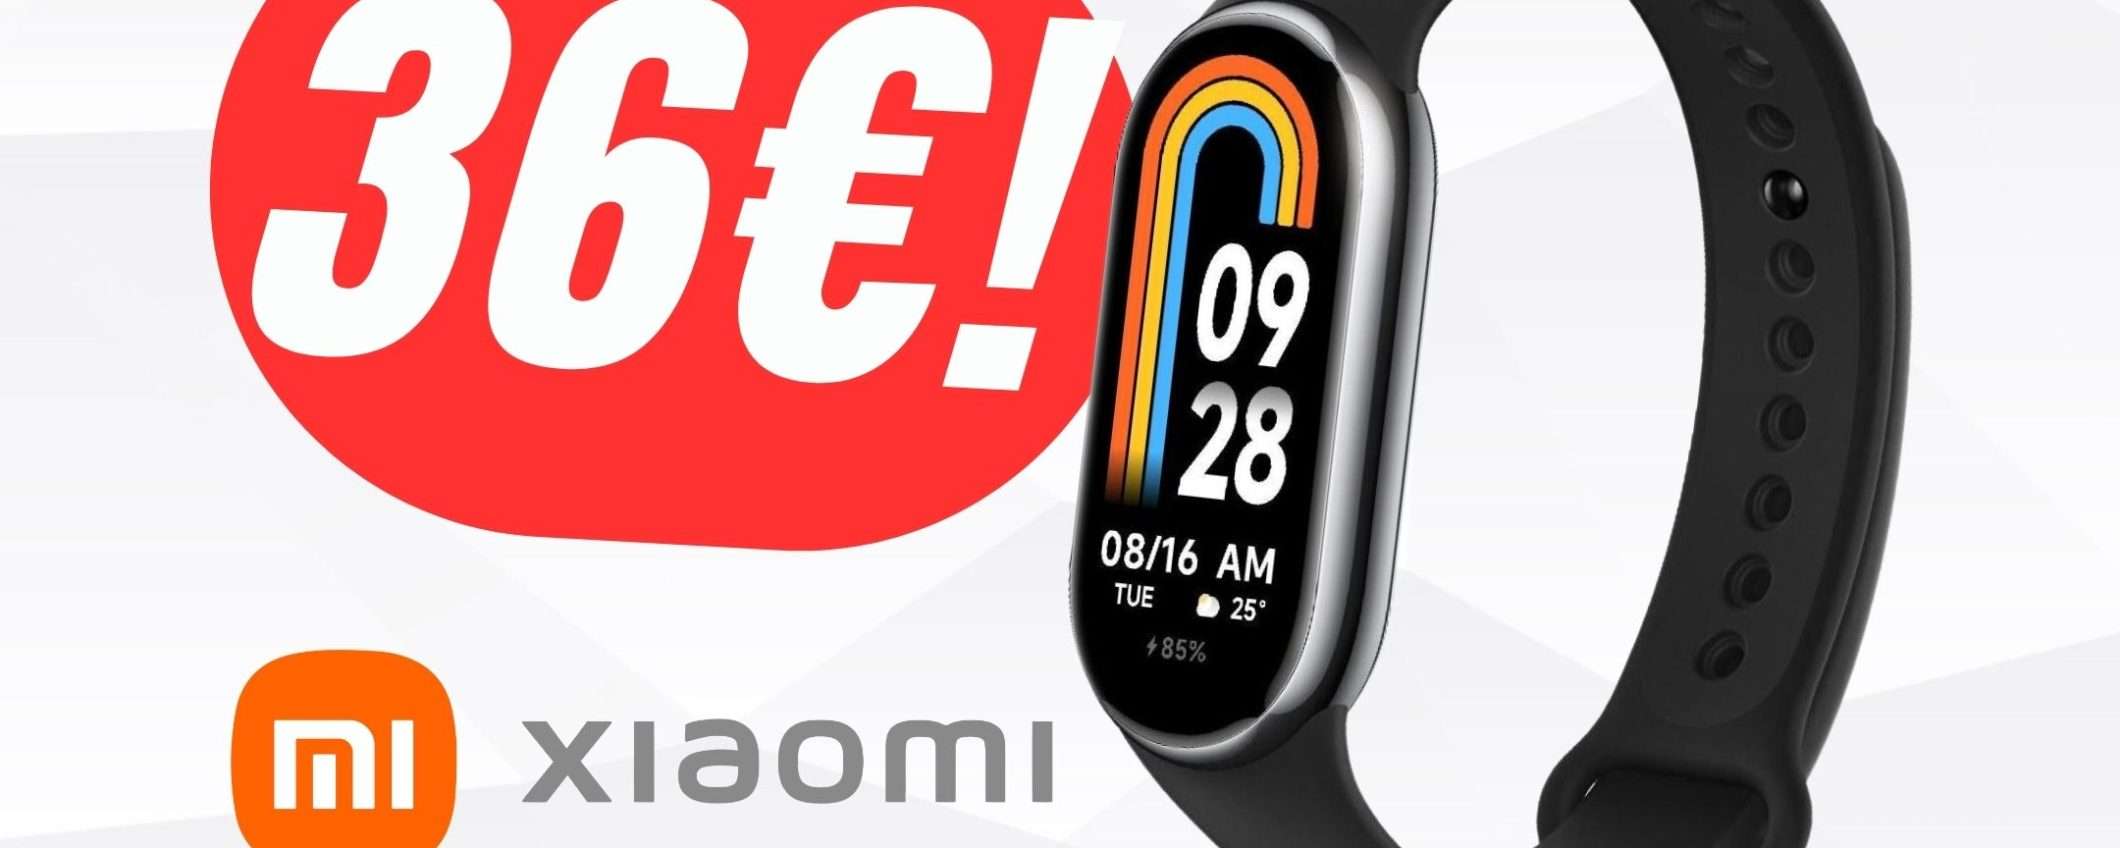 Xiaomi Mi Band 8 a un PREZZACCIO: solo 36€ grazie all'OFFERTA